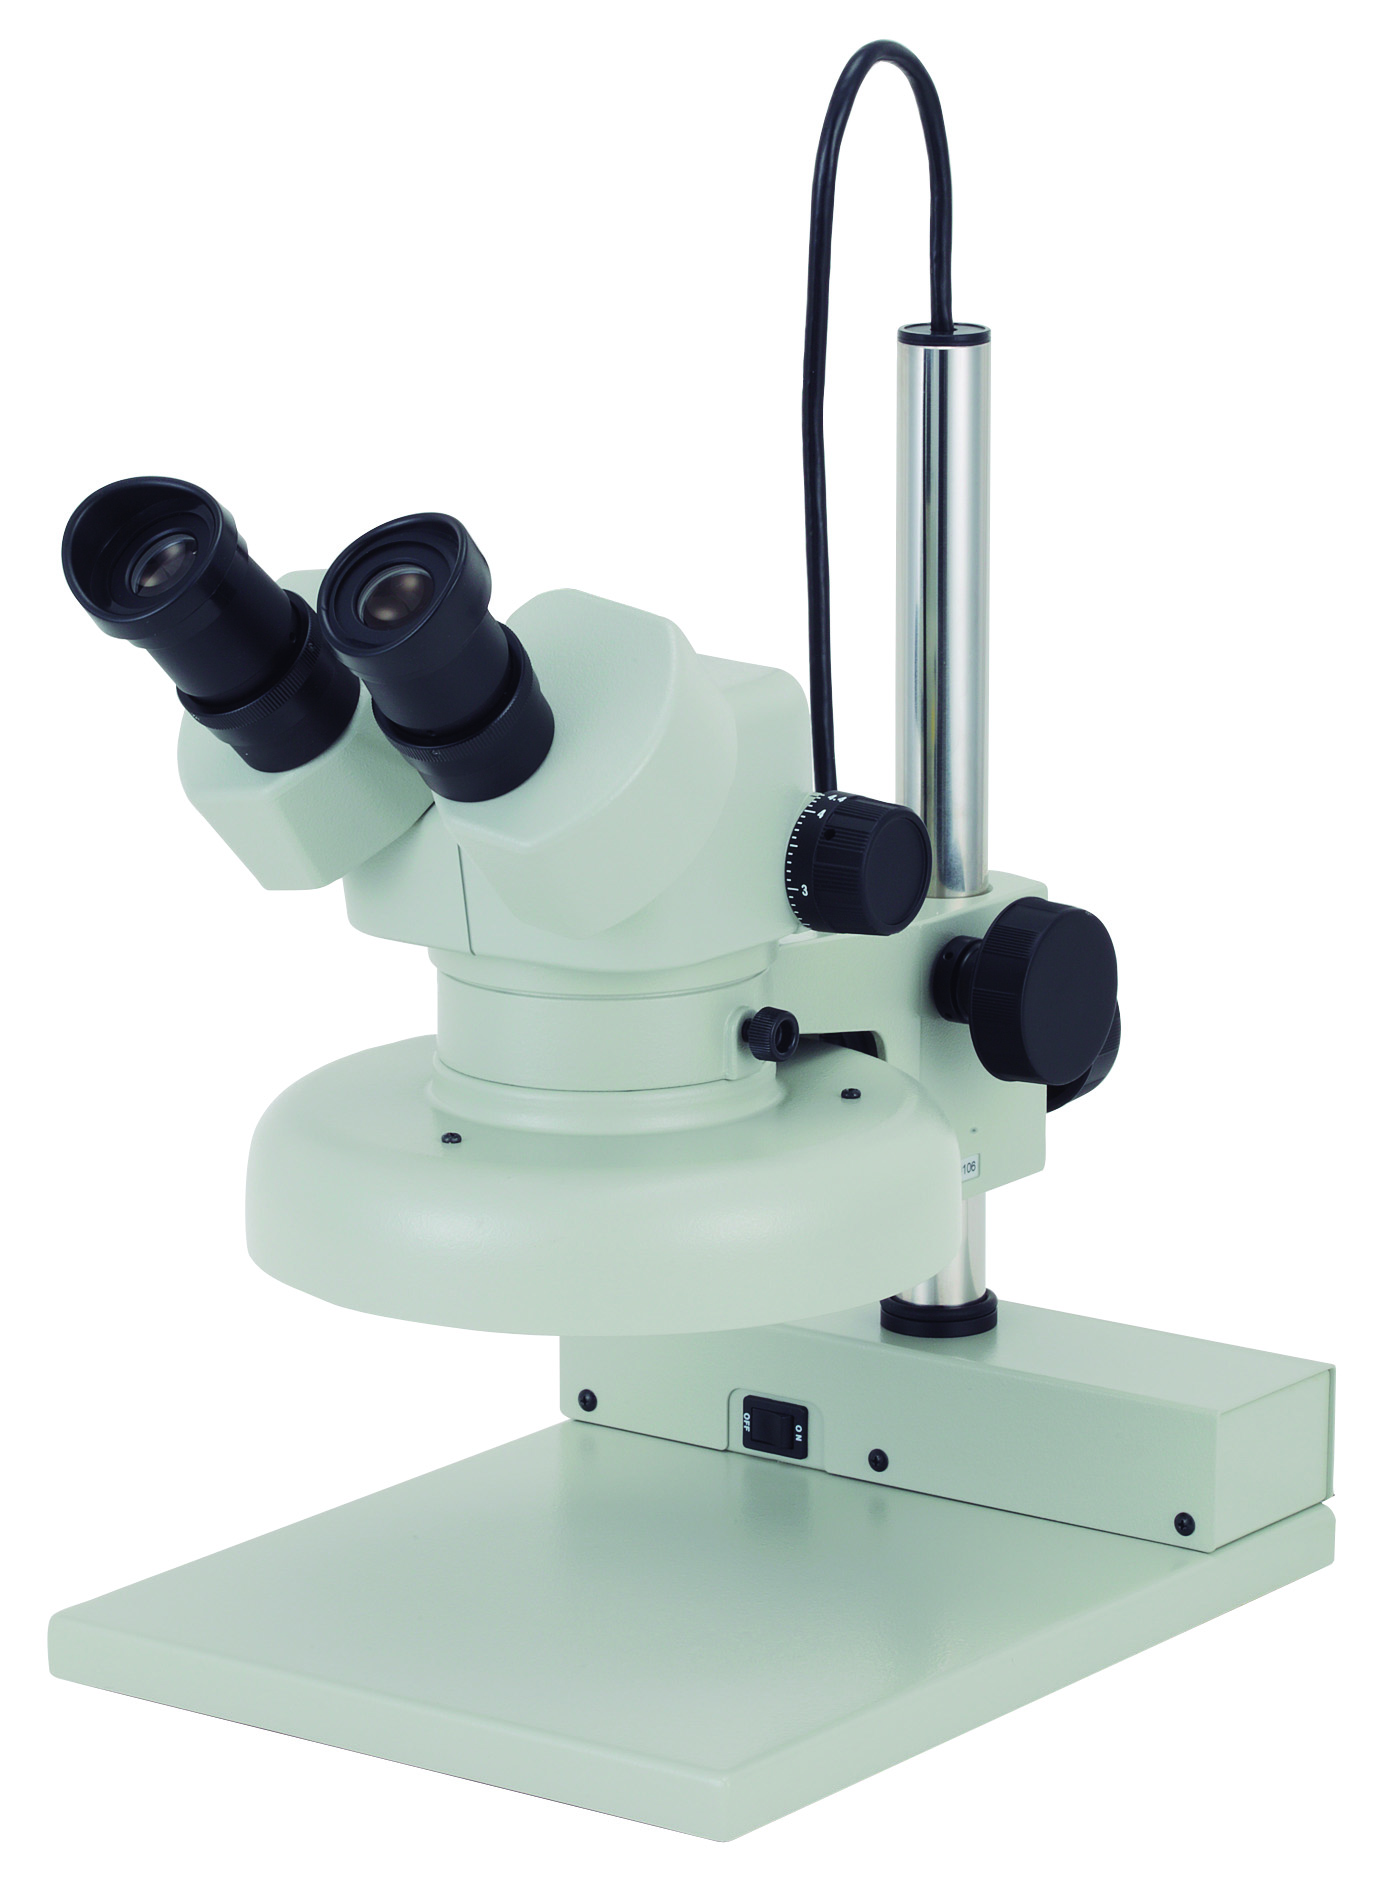 アズワン AS ONE 生物顕微鏡 E-138-LED 8-4171-02 [A100609] - 顕微鏡